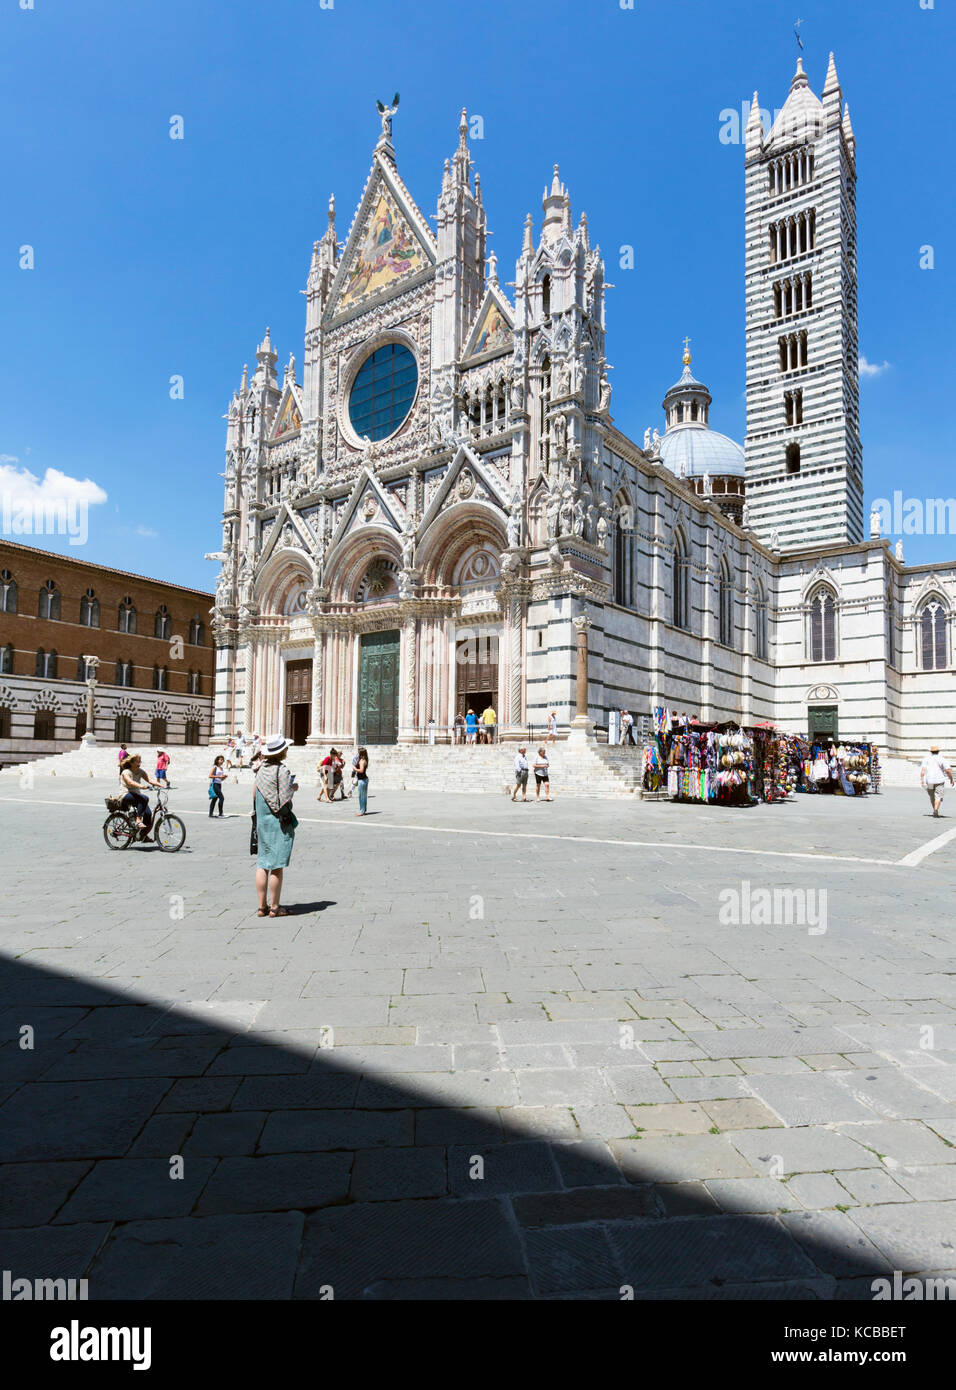 Sienne, la province de Sienne, Toscane, Italie. Le Duomo, ou la cathédrale. Le centre historique de Sienne est un unesco world heritage site. Banque D'Images